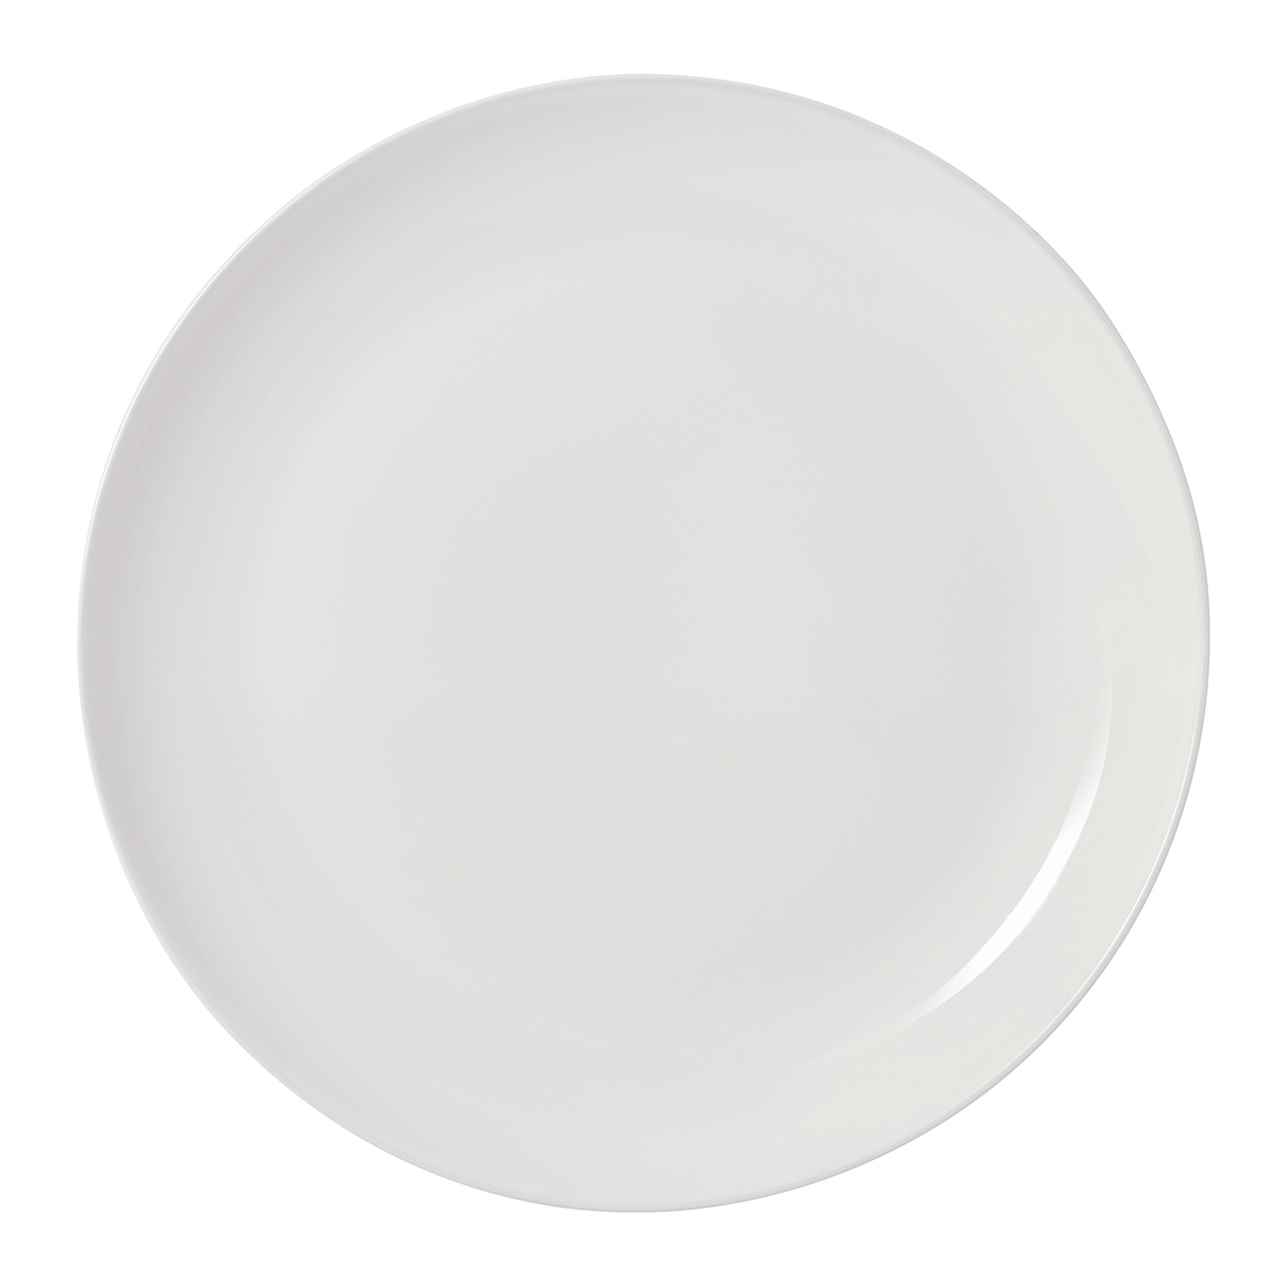 White Dinner Plate 27cm